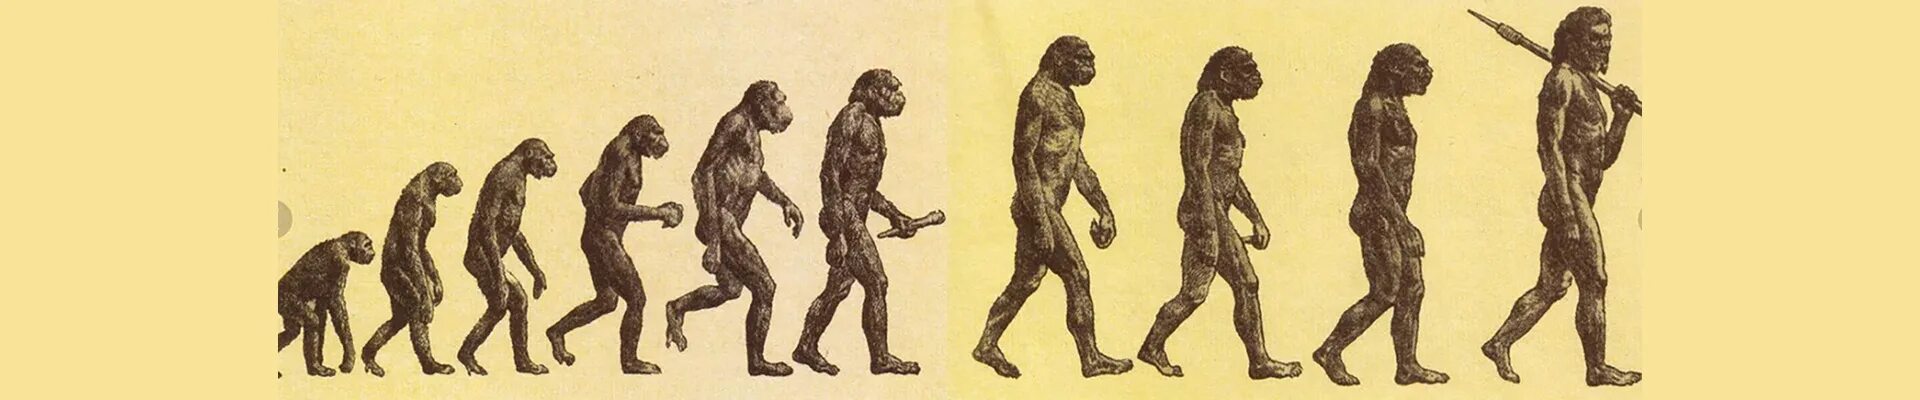 Процесс превращения человека в обезьяну. Теория эволюции Дарвина. Дарвин теория эволюции и происхождения человека. Теория Дарвина о происхождении человека.